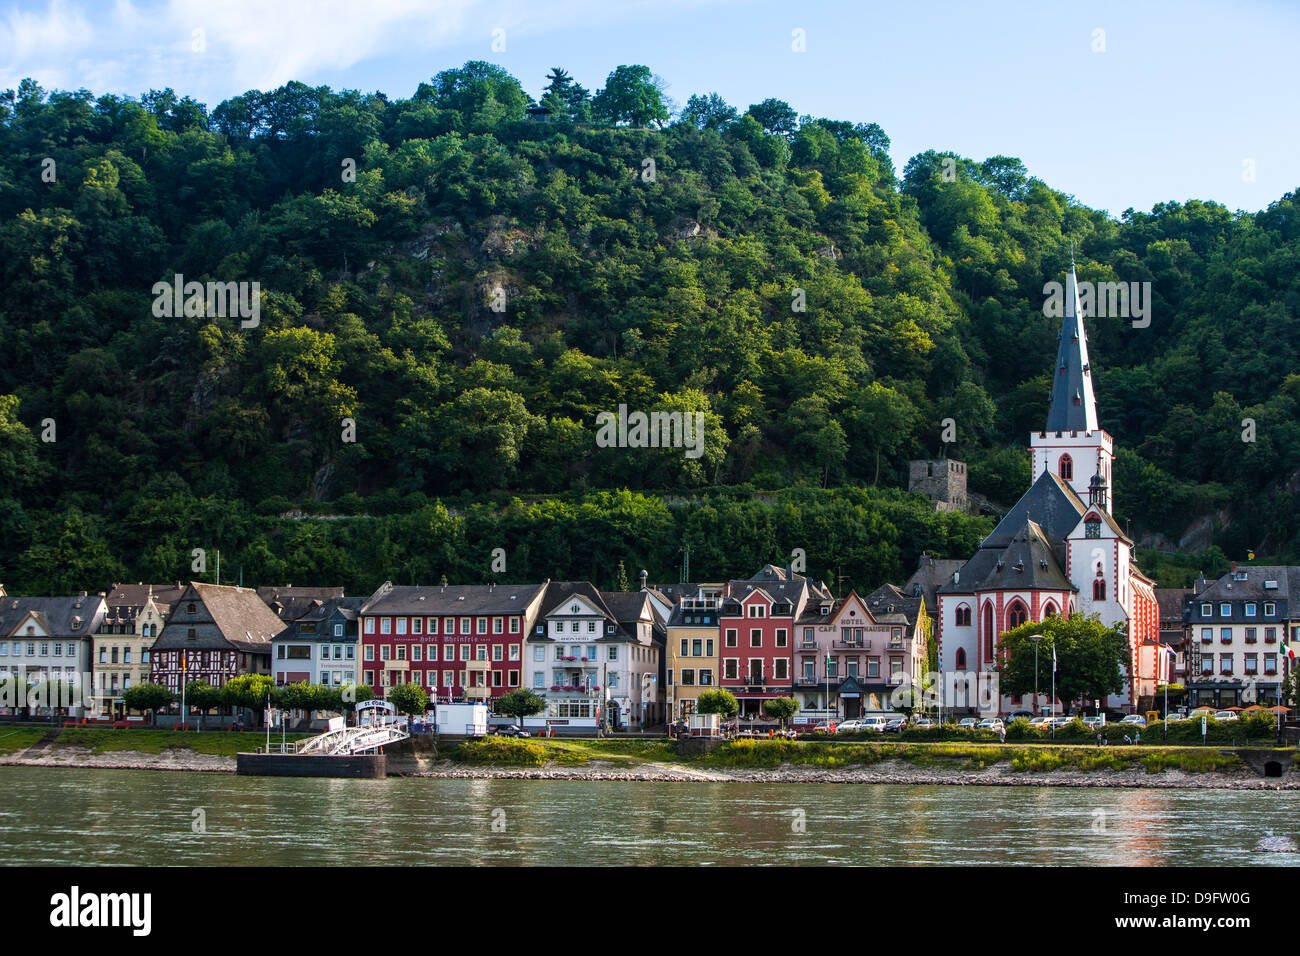 Village de Bacharach, dans la vallée du Rhin, Rhénanie-Palatinat, Allemagne Banque D'Images